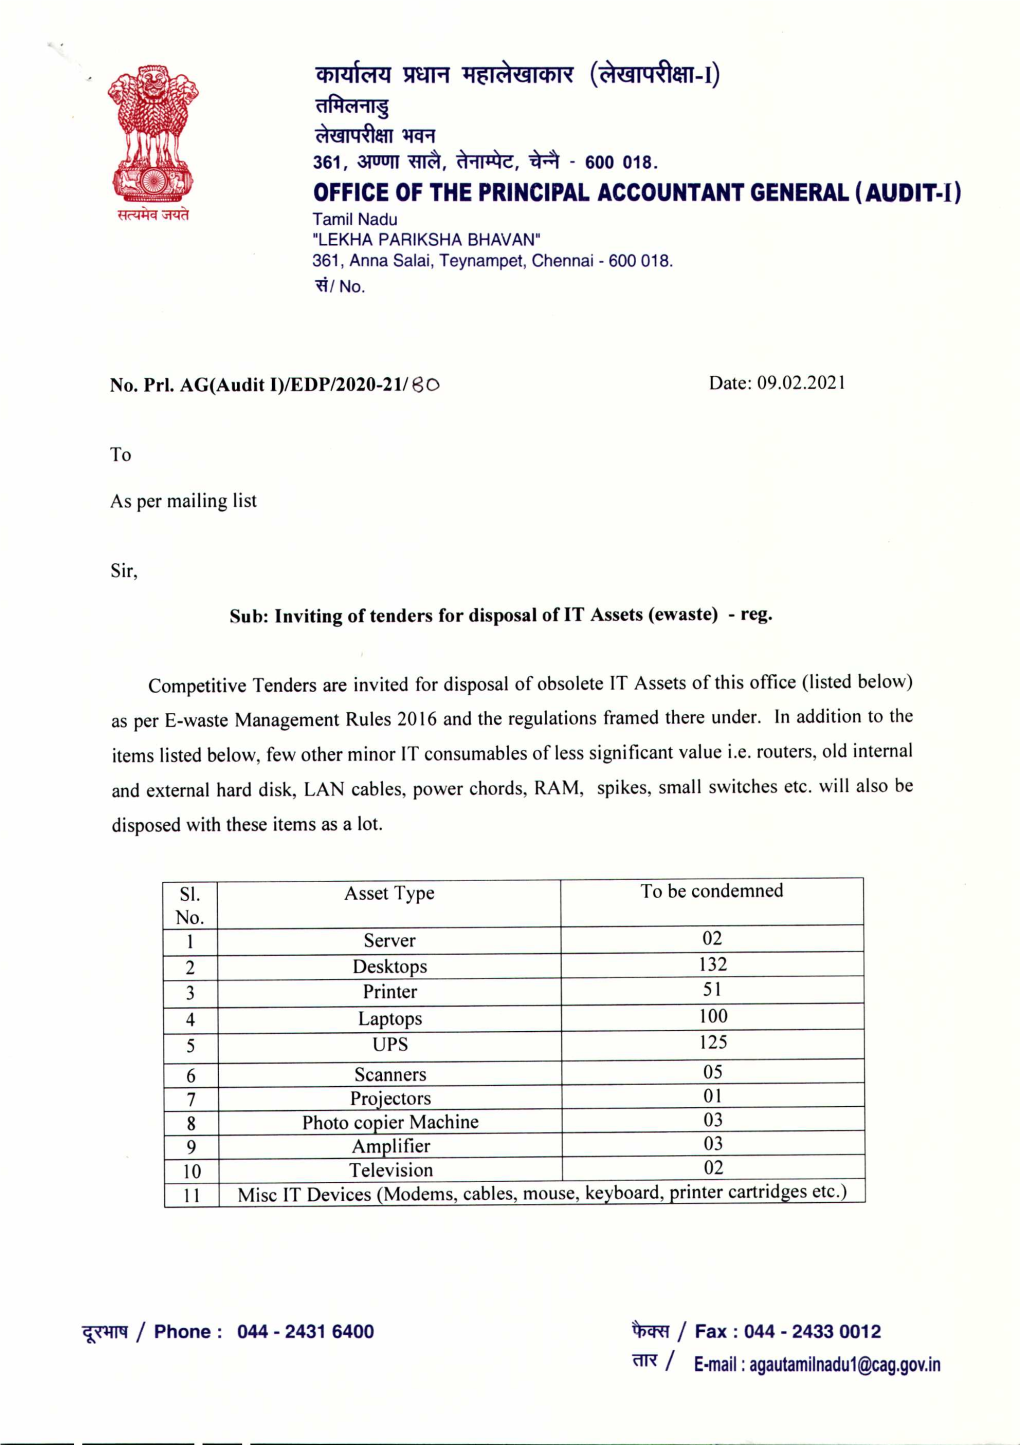 OFFICE of the PRINCIPAL ACCOUNTANT GENERAL (AUDIT-I) Tamil Nadu "LEKHA PARIKSHA BHAVAN" 361, Anna Salai, Teynampet, Chennai - 600 018